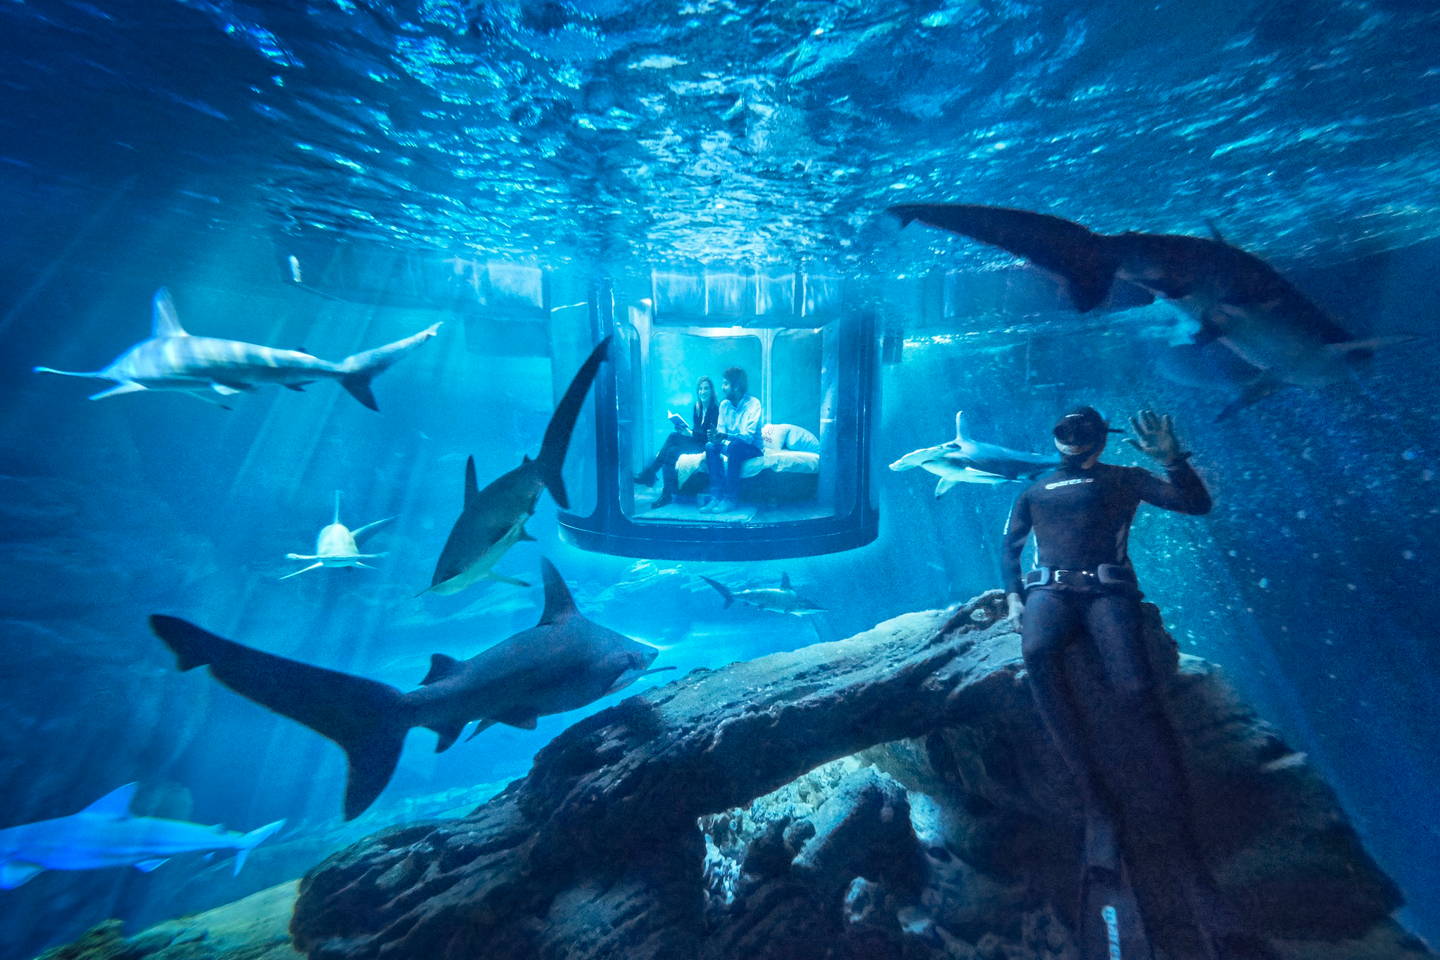 ไปนอนกับฉลามสักคืนจะเป็นไง!! Airbnb จัดการแข่งขันที่มีรางวัลคือไปนอนใต้น้ำกับฉลาม